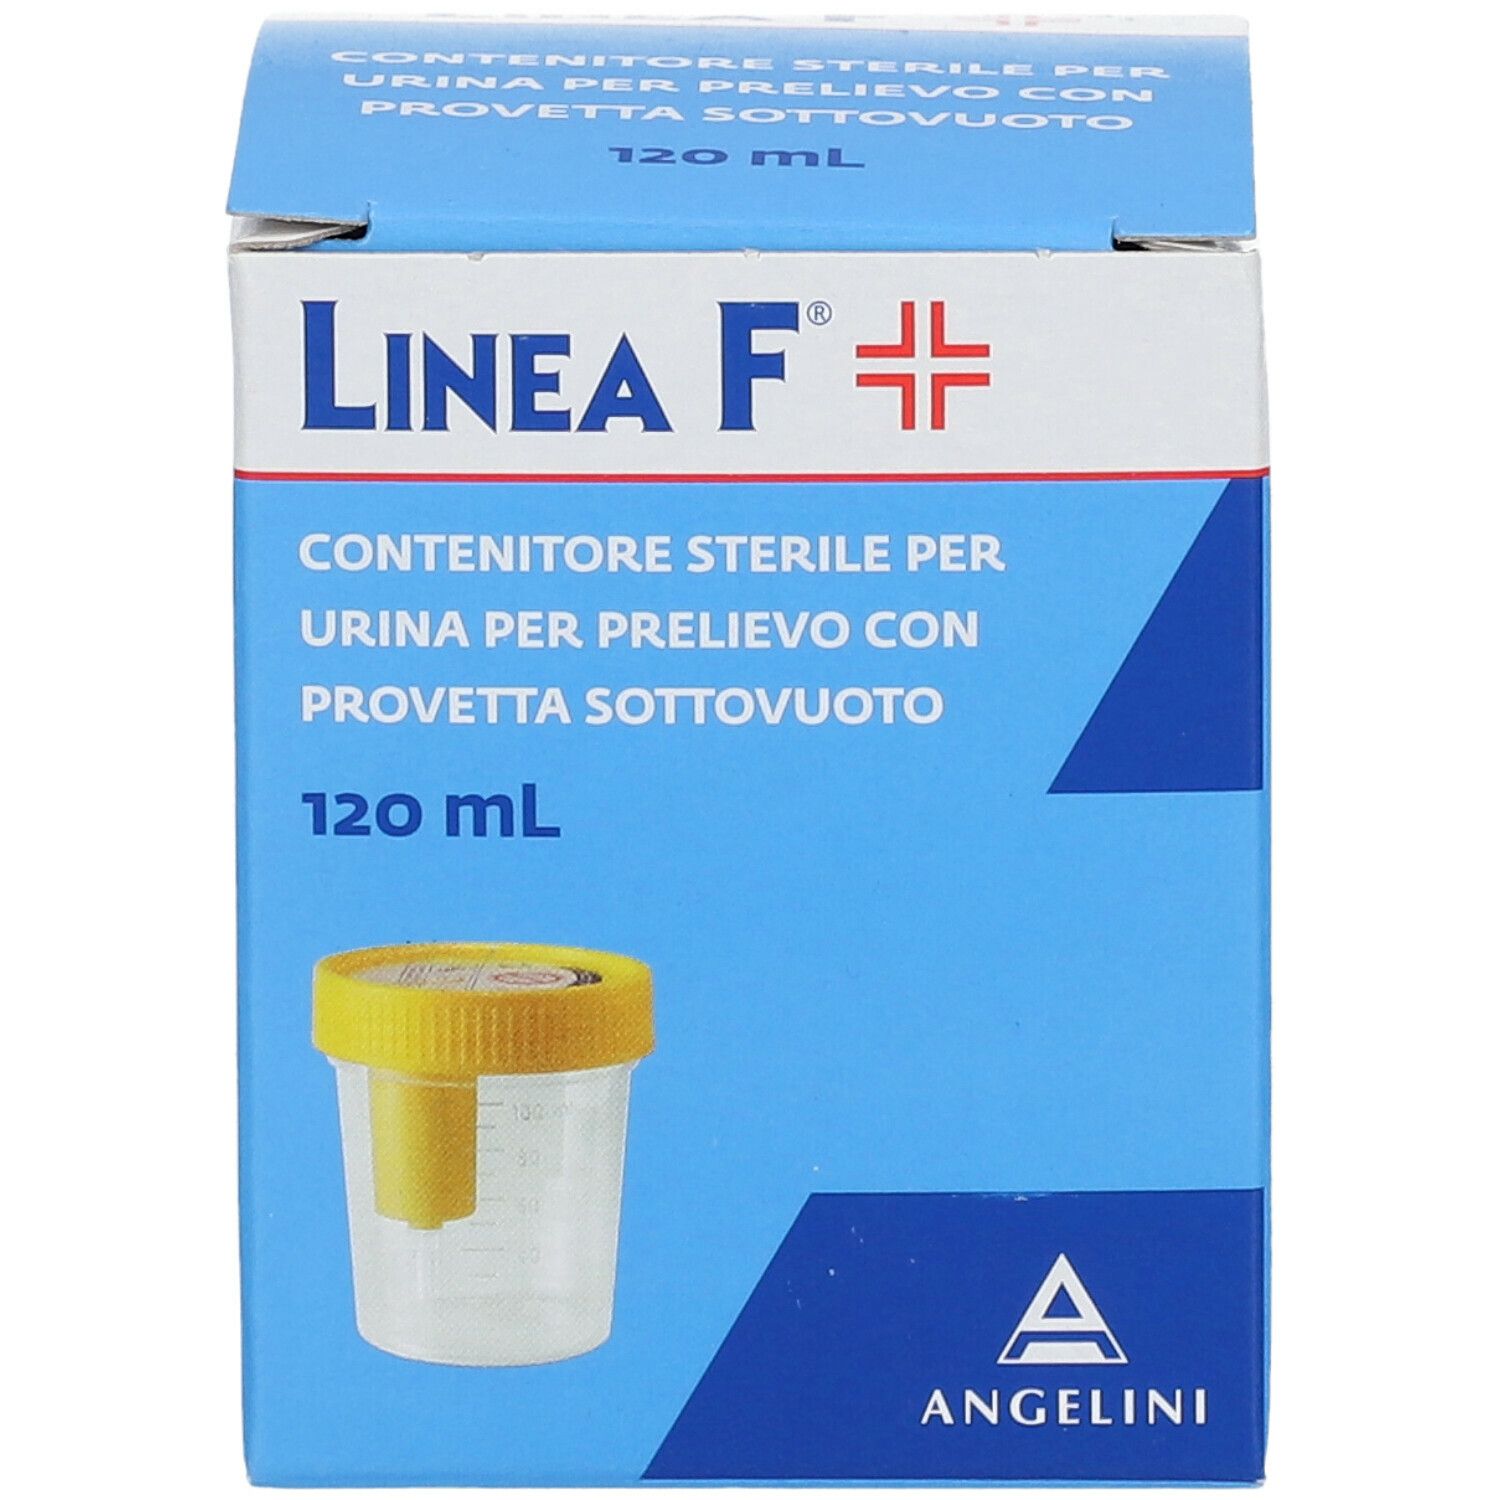 ANGELINI Linea F® Contenitore Sterile per Urina